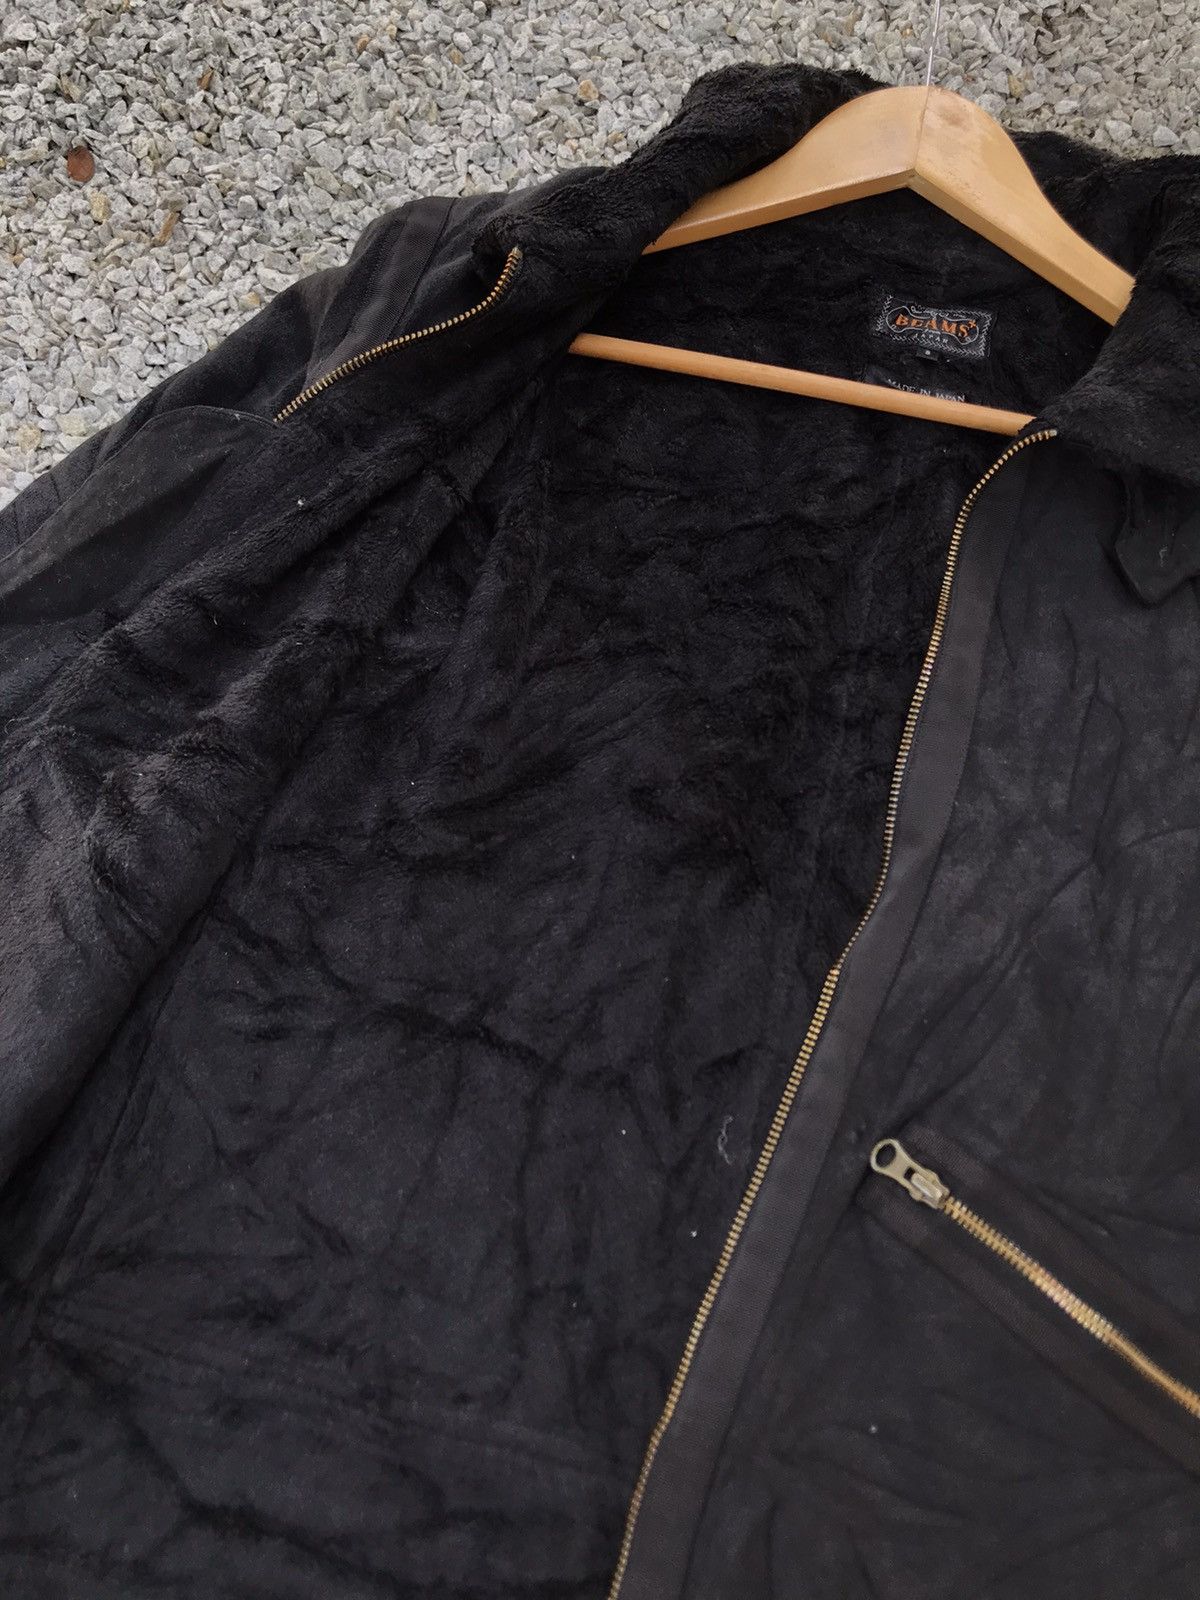 Made In Japan Beams Black jacket - 3